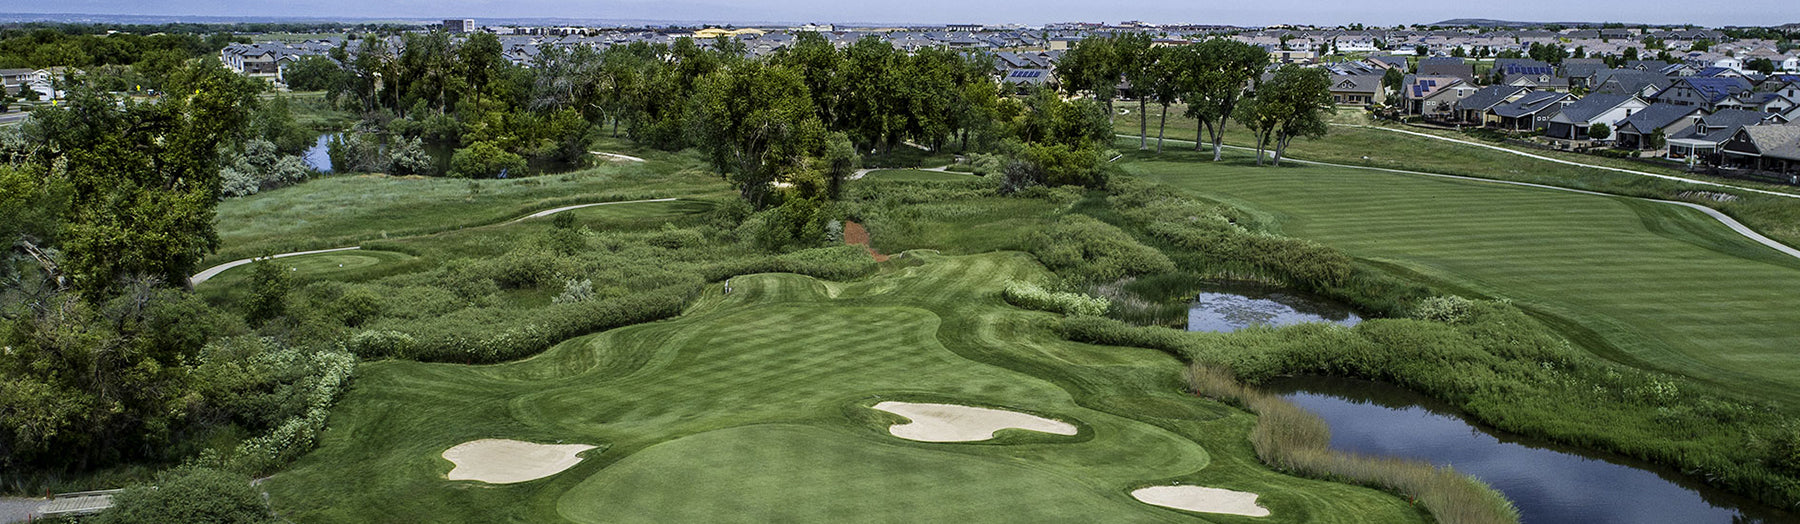 Fiberbuilt Facility Spotlight: Green Valley Ranch Golf Club